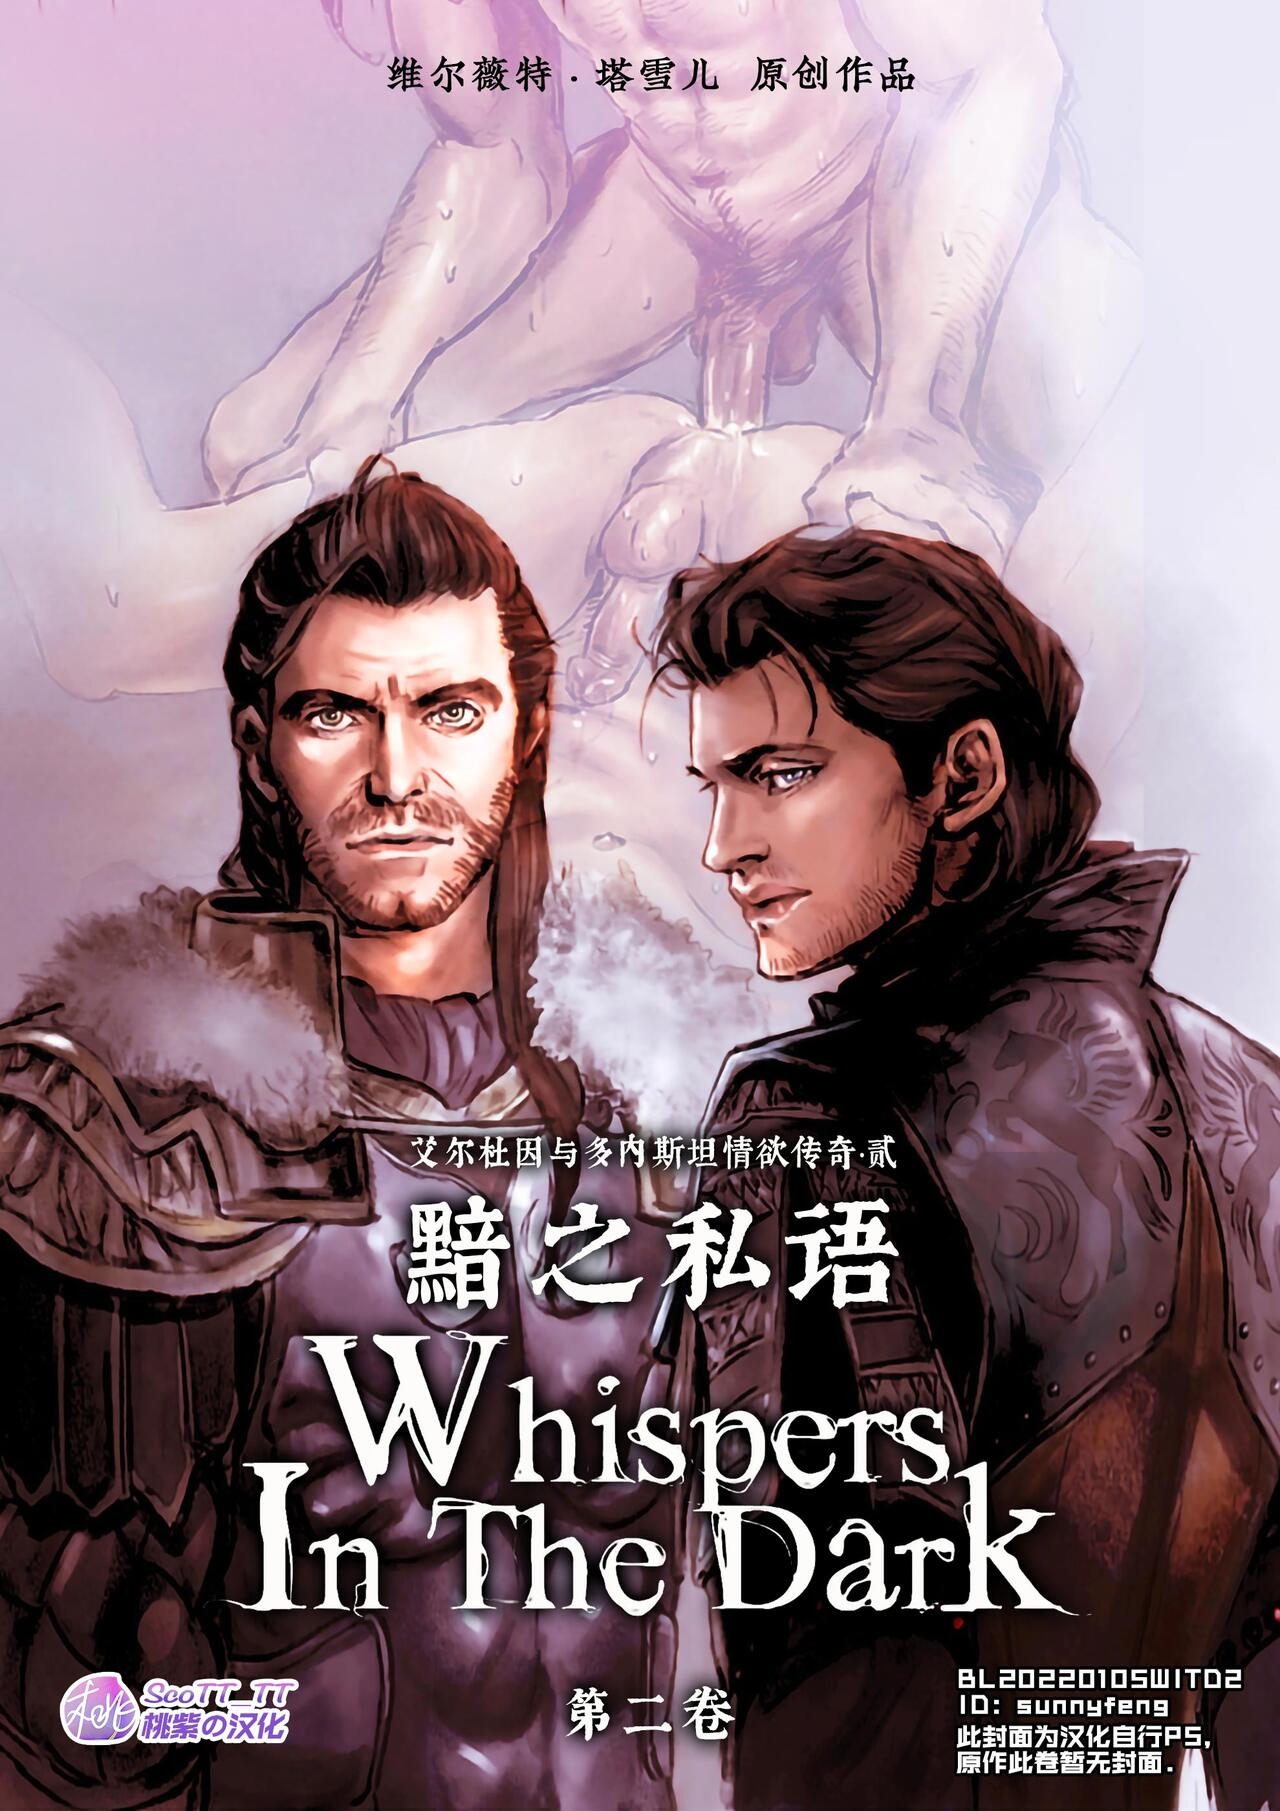 [Velvet Toucher] Whispers In the Dark - Chapter 2 | 黯之私语 [Chinese] [桃紫 ScoTT_TT] 0